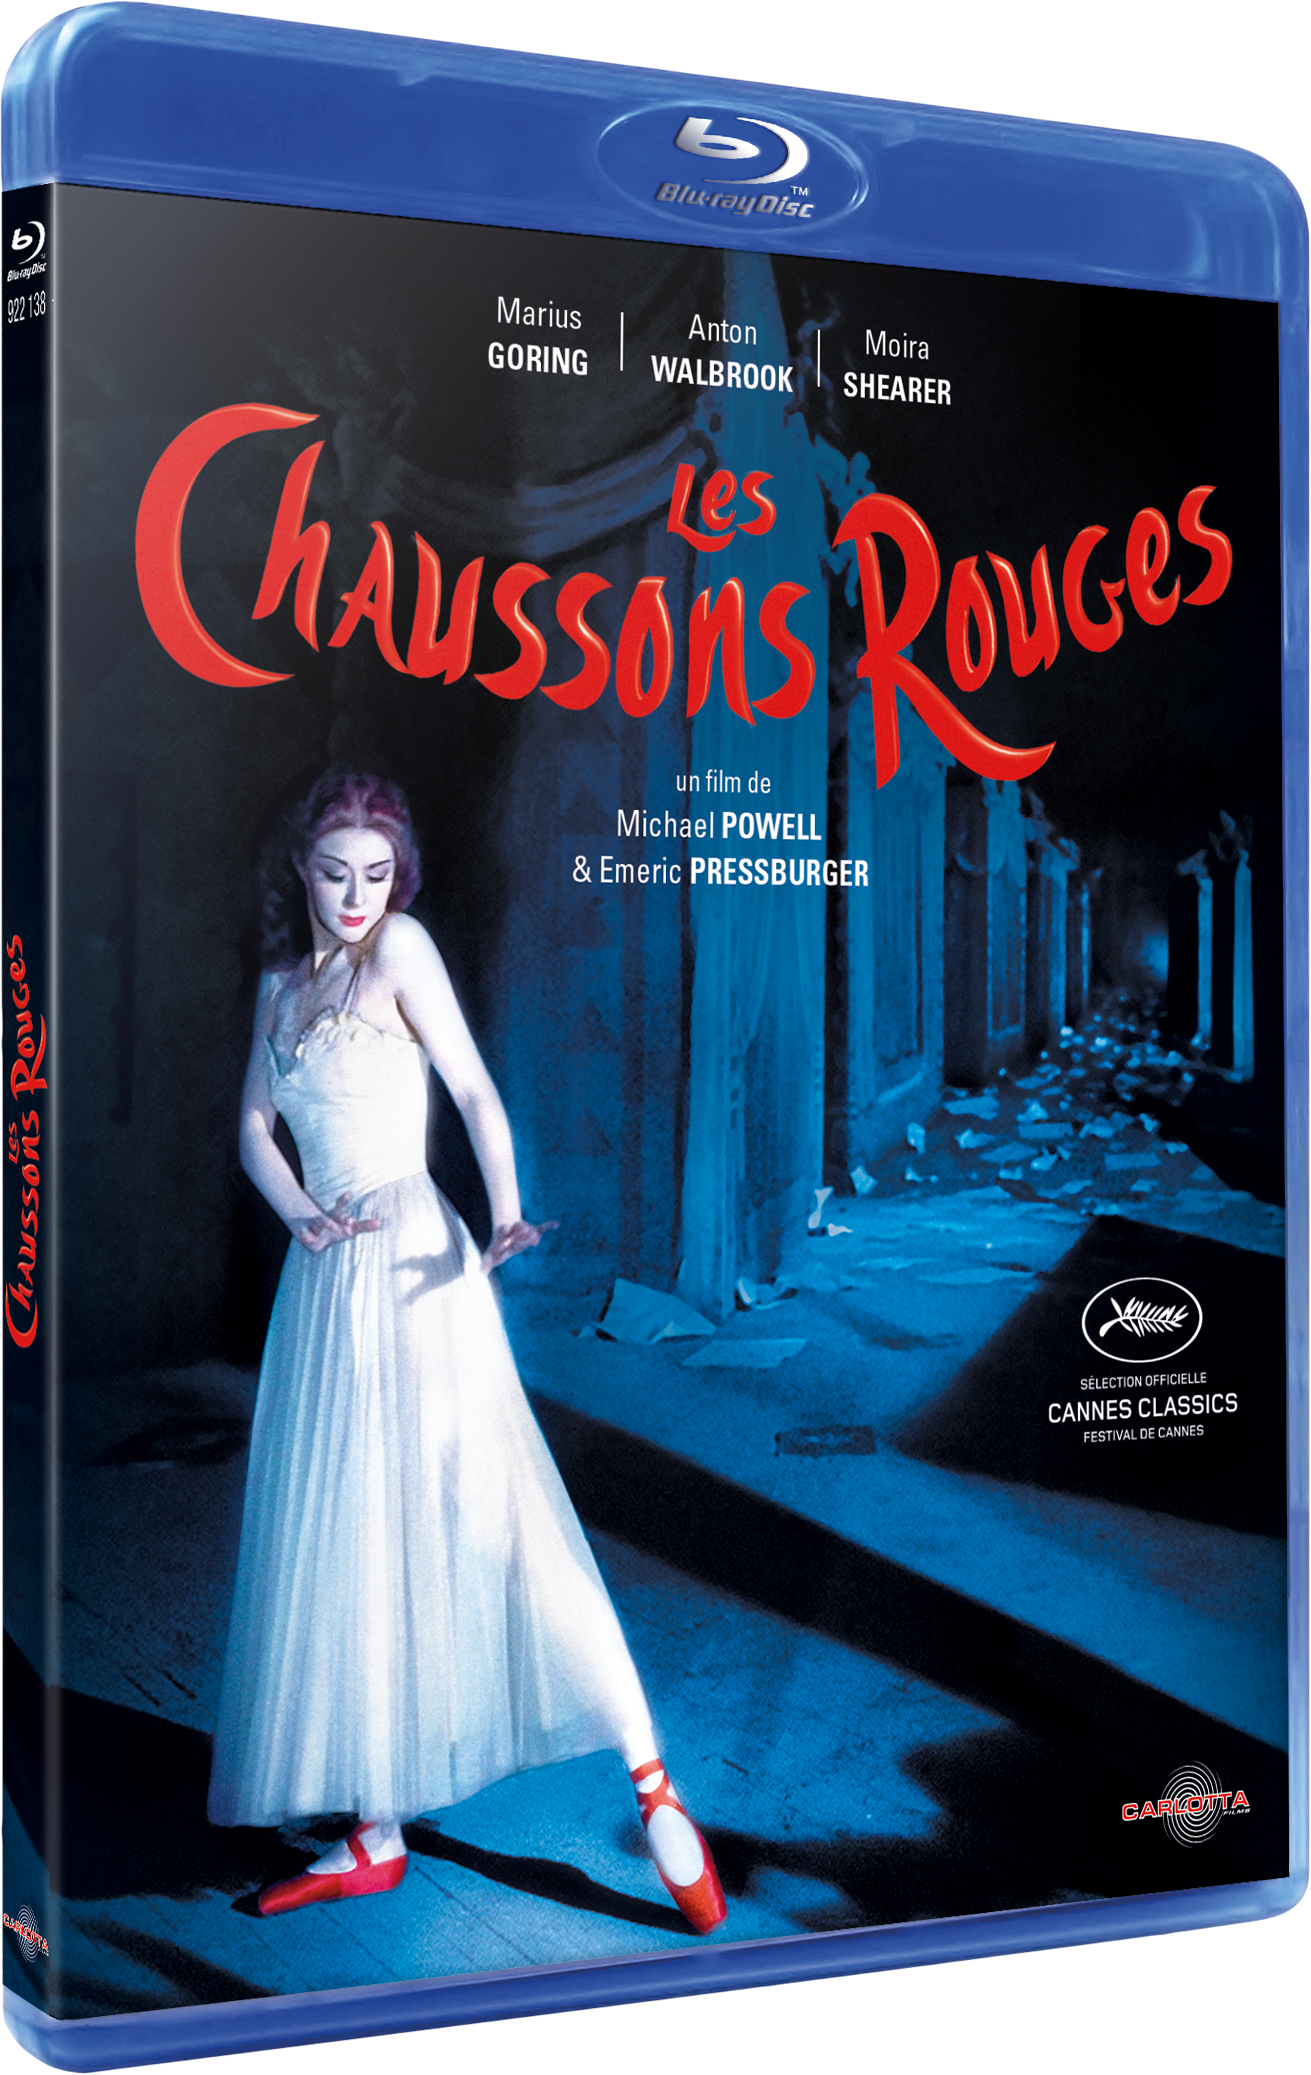 Les Chaussons rouges de Michael Powell & Emeric Pressburger - Carlotta Films - La Boutique